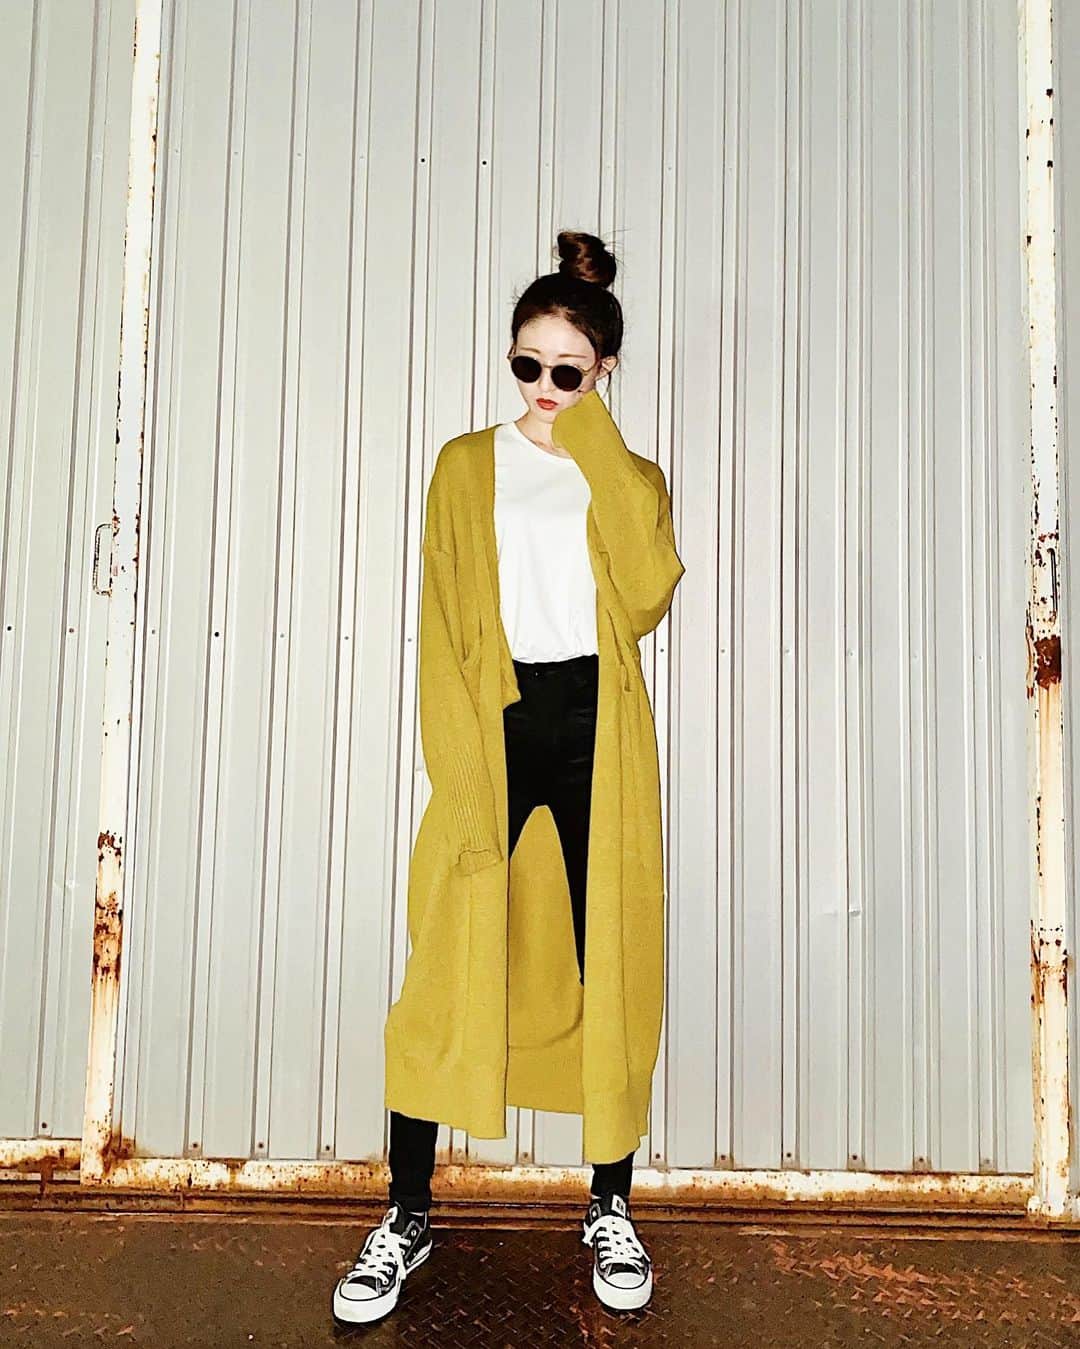 rittann48のインスタグラム：「. . . ㅤㅤㅤㅤㅤㅤㅤㅤㅤㅤㅤㅤㅤ fashion ㅤㅤㅤㅤㅤㅤㅤㅤㅤㅤㅤㅤㅤ ㅤㅤㅤㅤㅤㅤㅤㅤㅤㅤㅤㅤㅤ カーデcode 珍しいカラーのカーデに一目惚れ ロングカーデは毎年着れるから好き .ㅤㅤㅤㅤㅤㅤㅤㅤㅤㅤㅤㅤㅤ .ㅤㅤㅤㅤㅤㅤㅤㅤㅤㅤㅤㅤㅤ .ㅤㅤㅤㅤㅤㅤㅤㅤㅤㅤㅤㅤㅤ #simple #fashion #style  #code #ootd #outfit  #uniqlo #andj #emoda #converse」